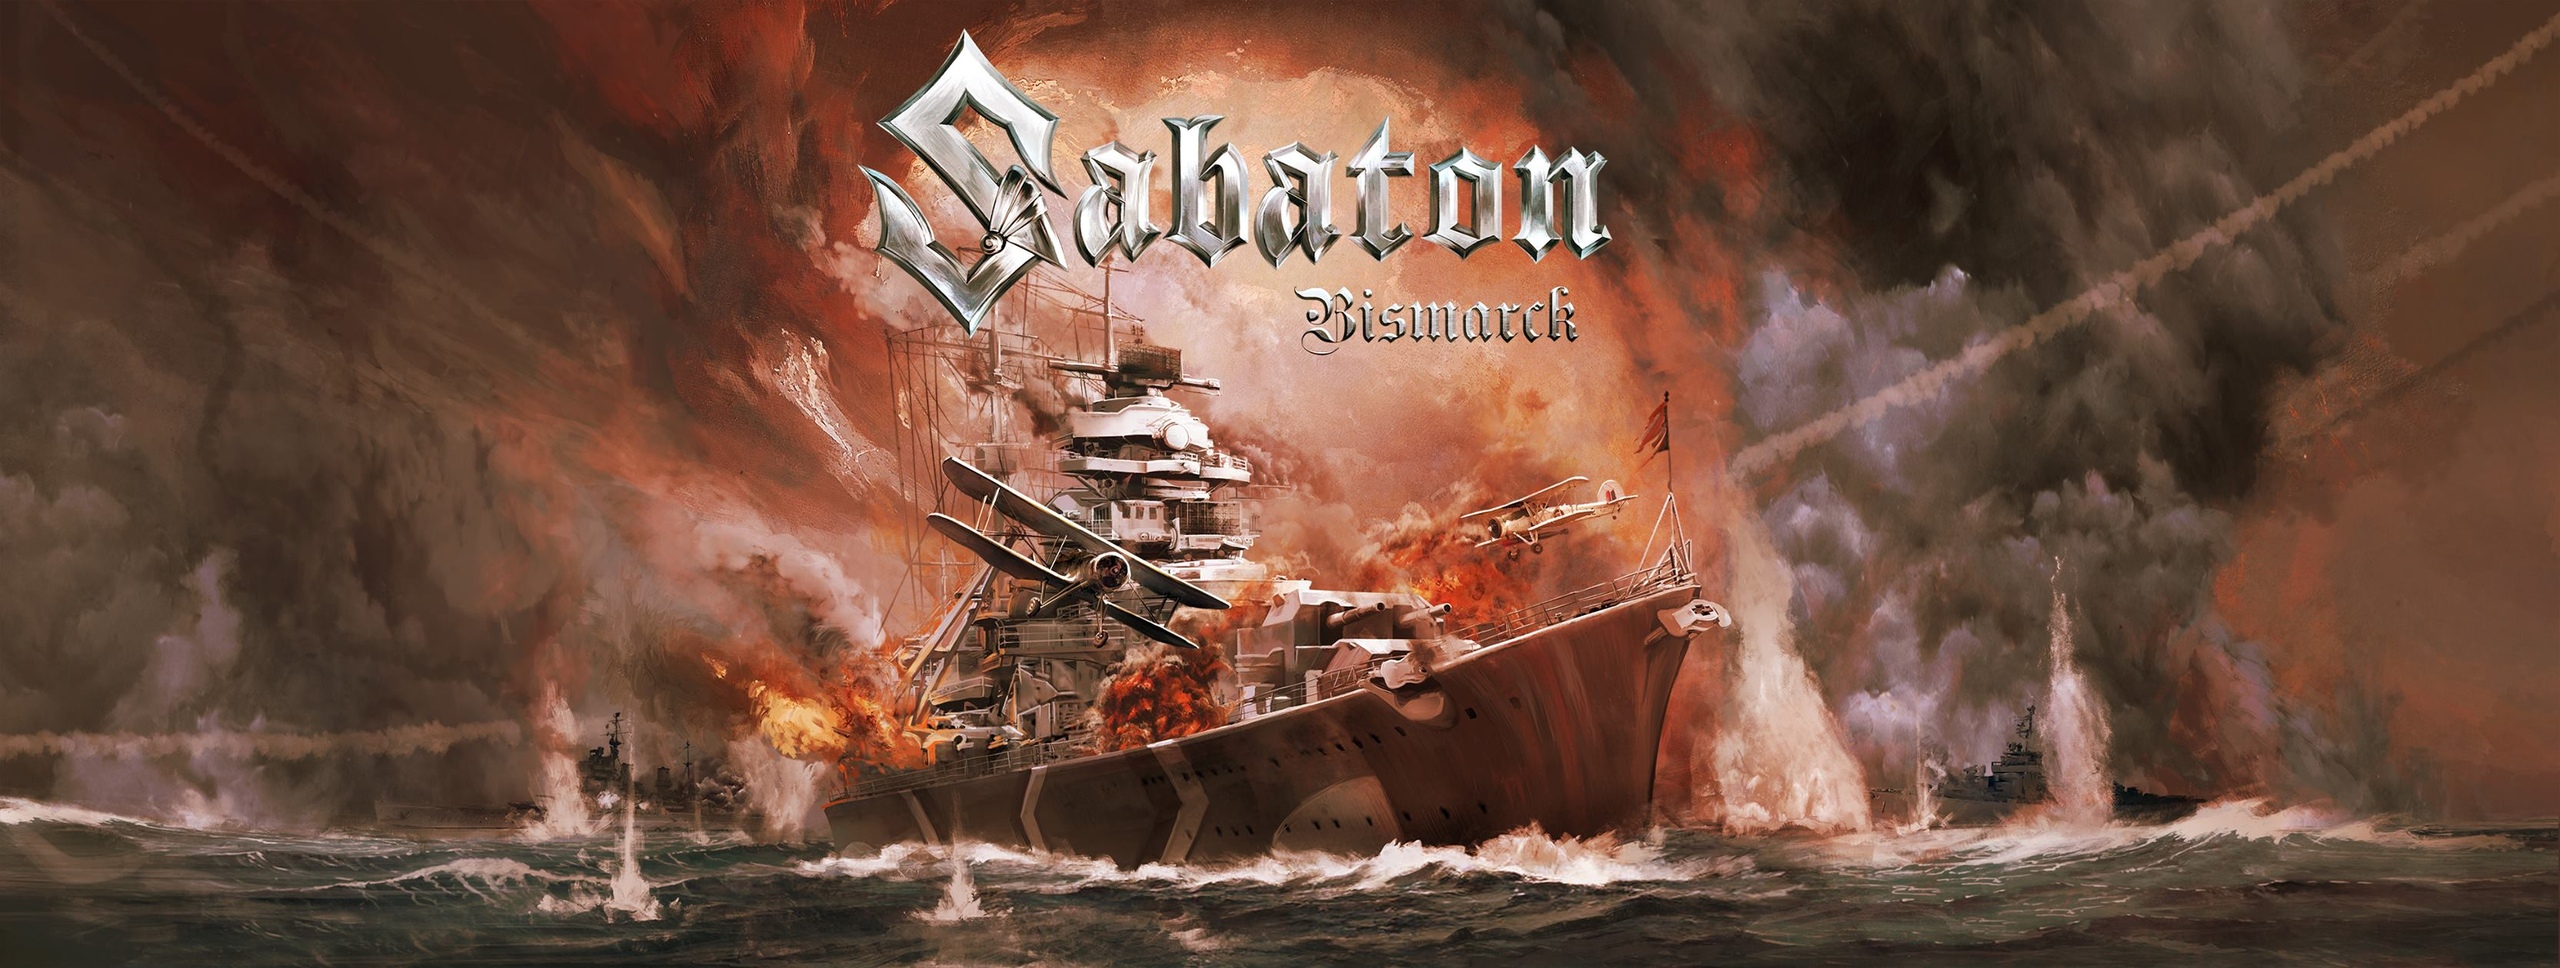 Песня "Bismarck" группы Sabaton на русском